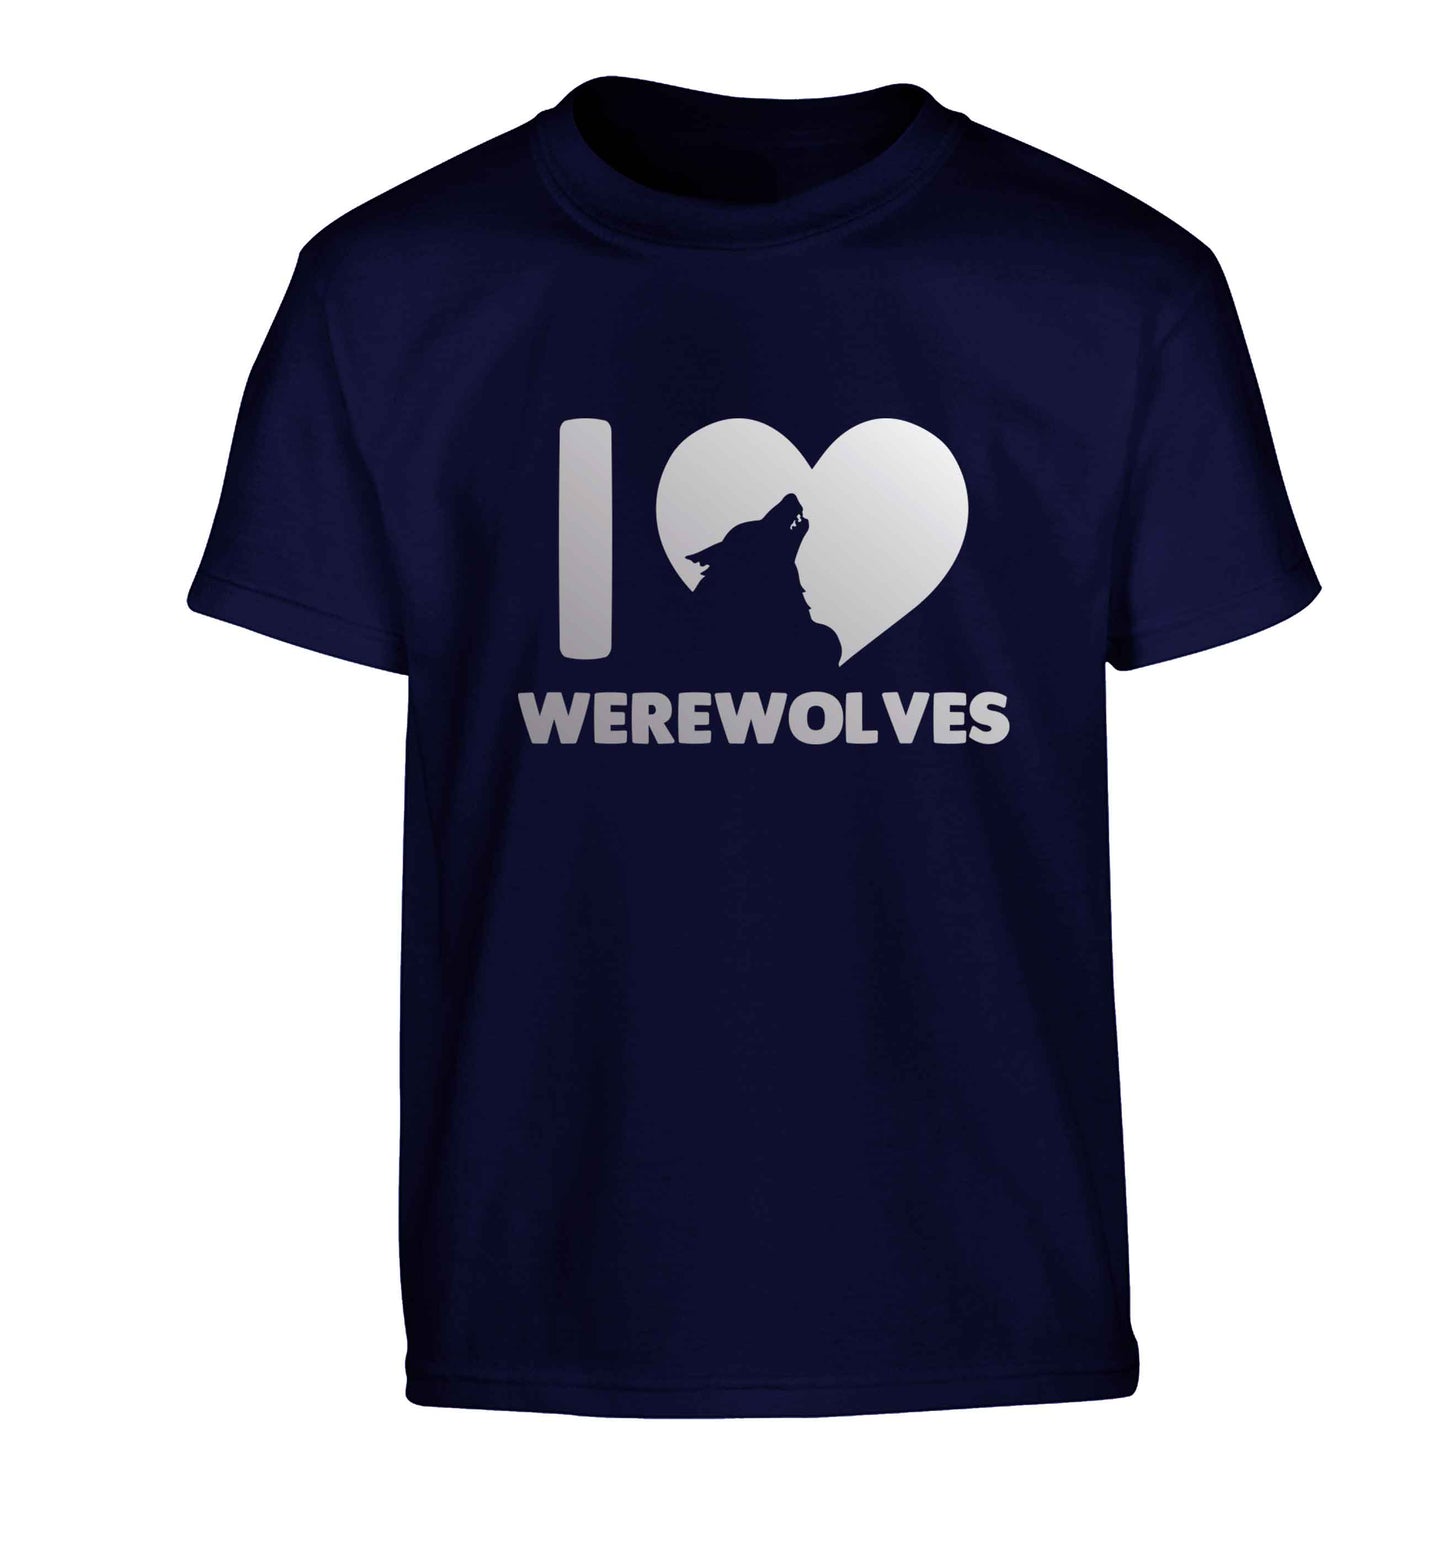 I love werewolves Children's navy Tshirt 12-13 Years